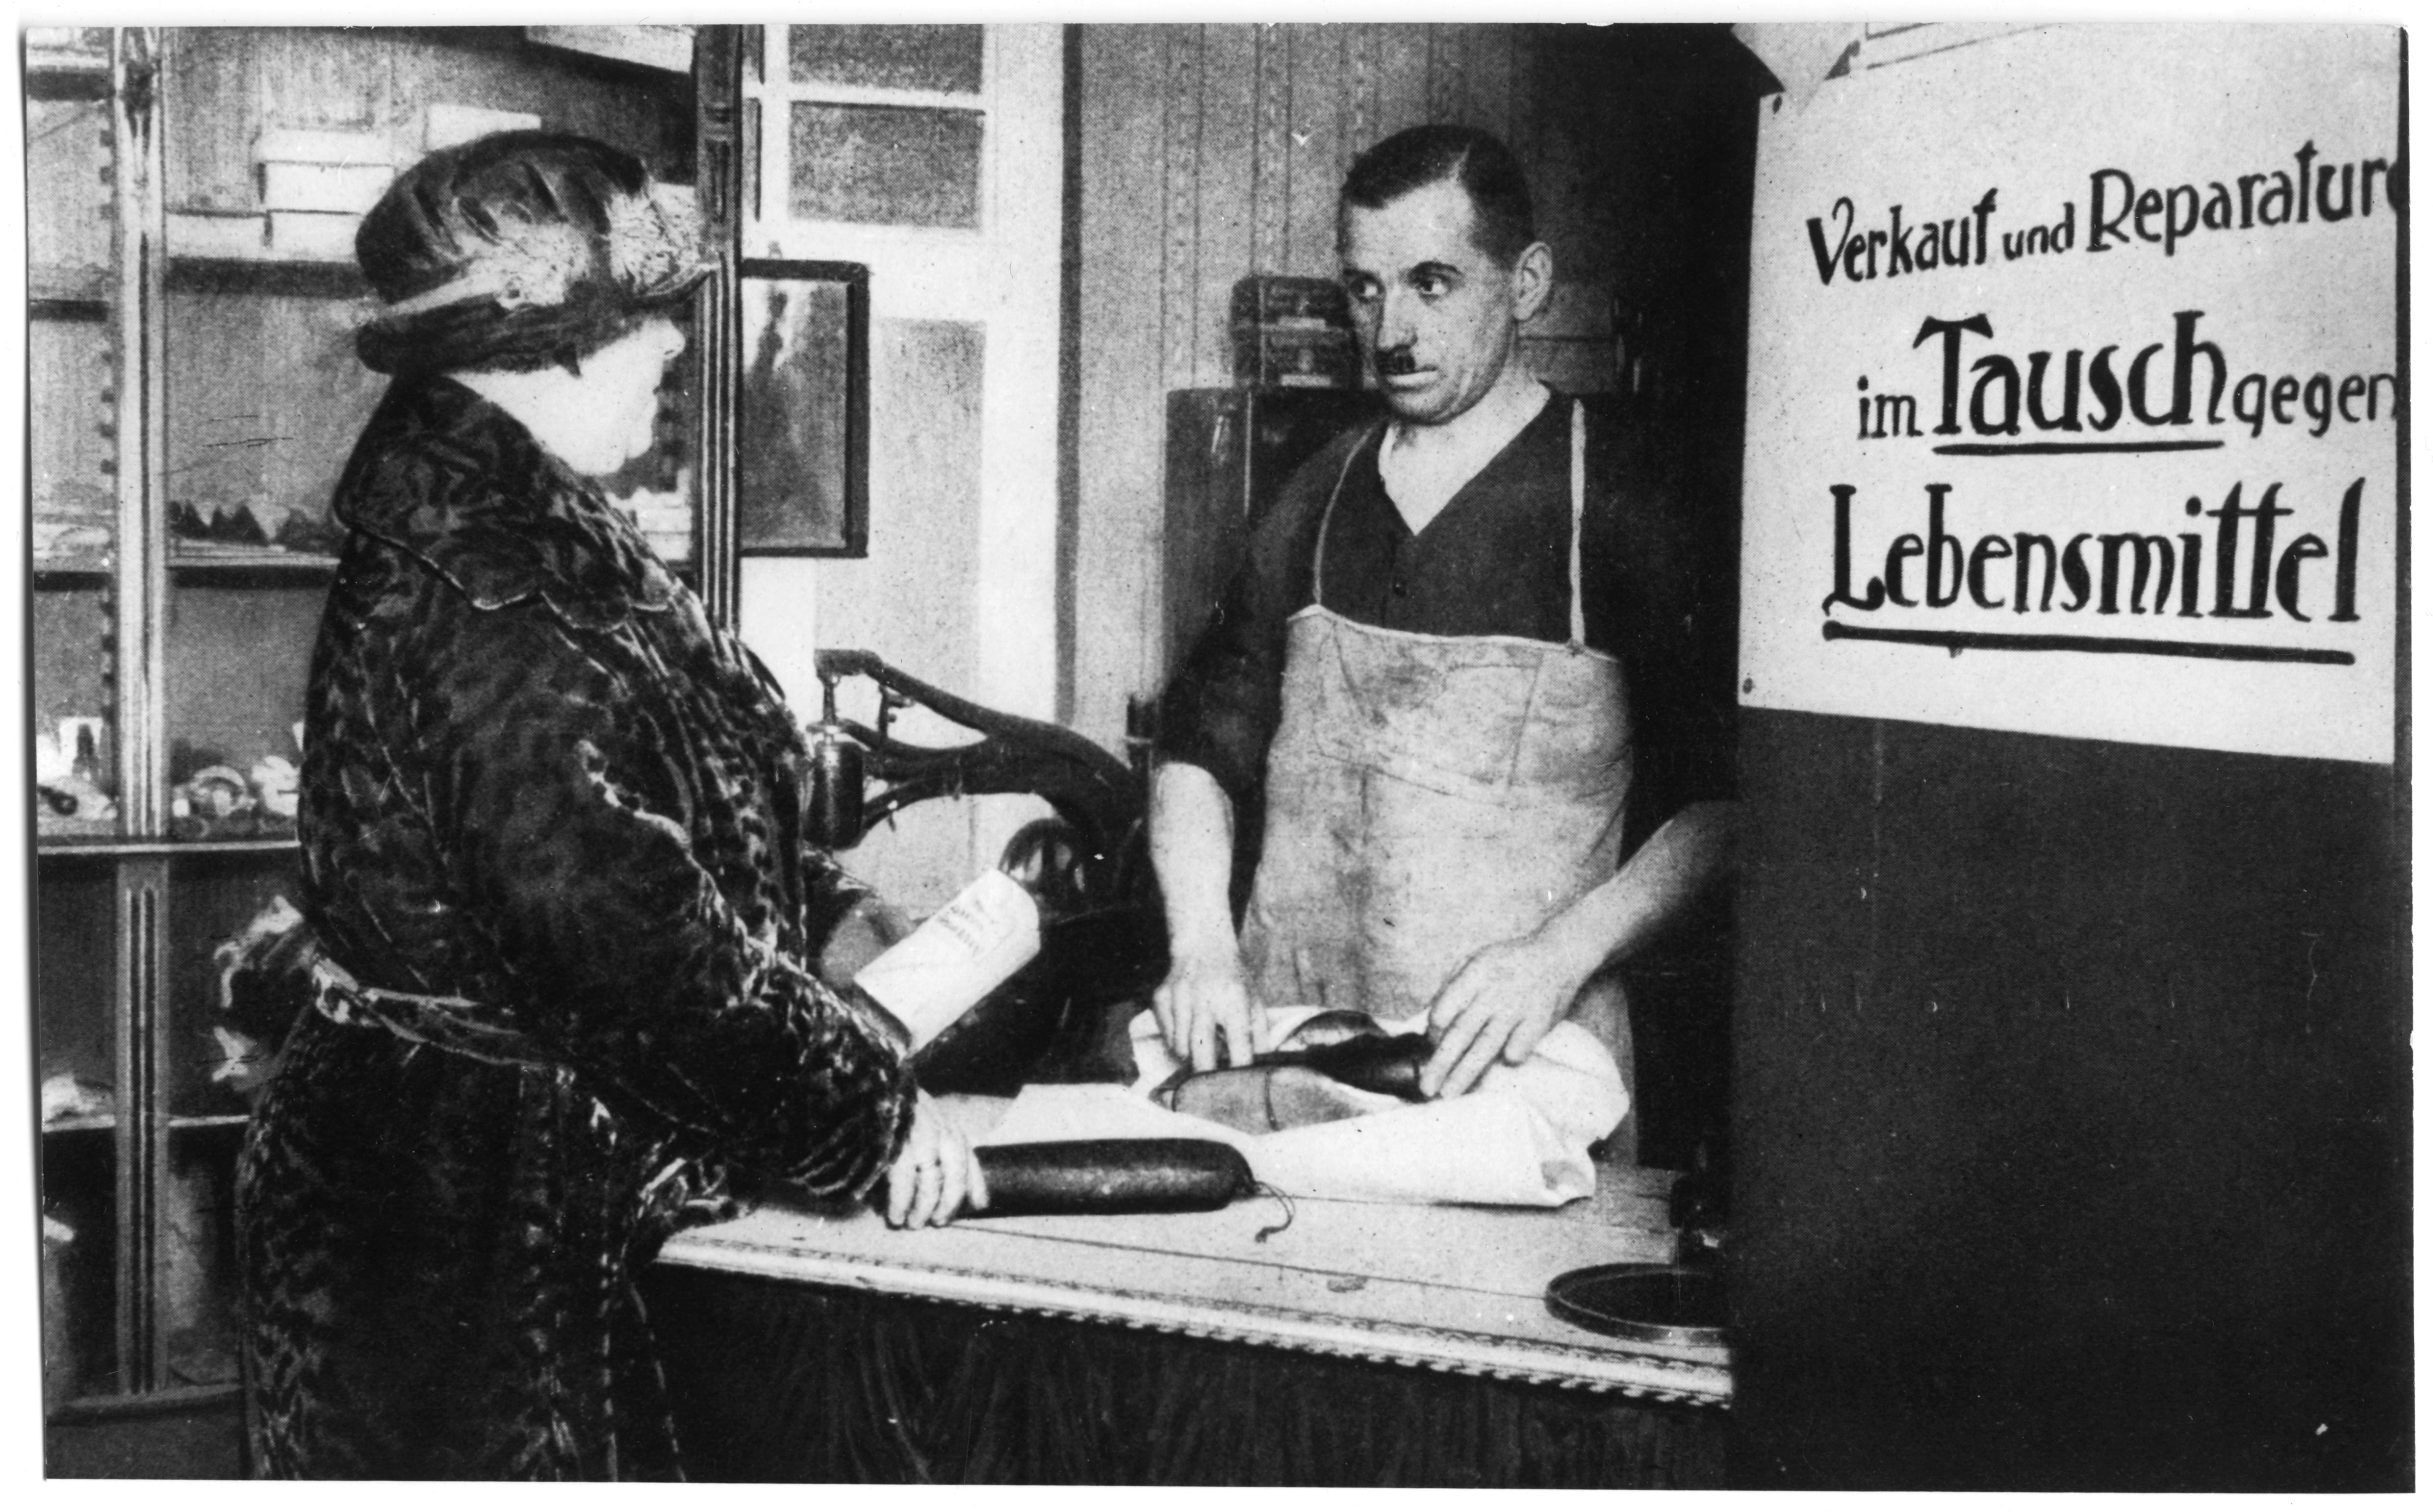 Exponat: Foto: Verkauf im Tausch gegen Lebensmittel, 1923